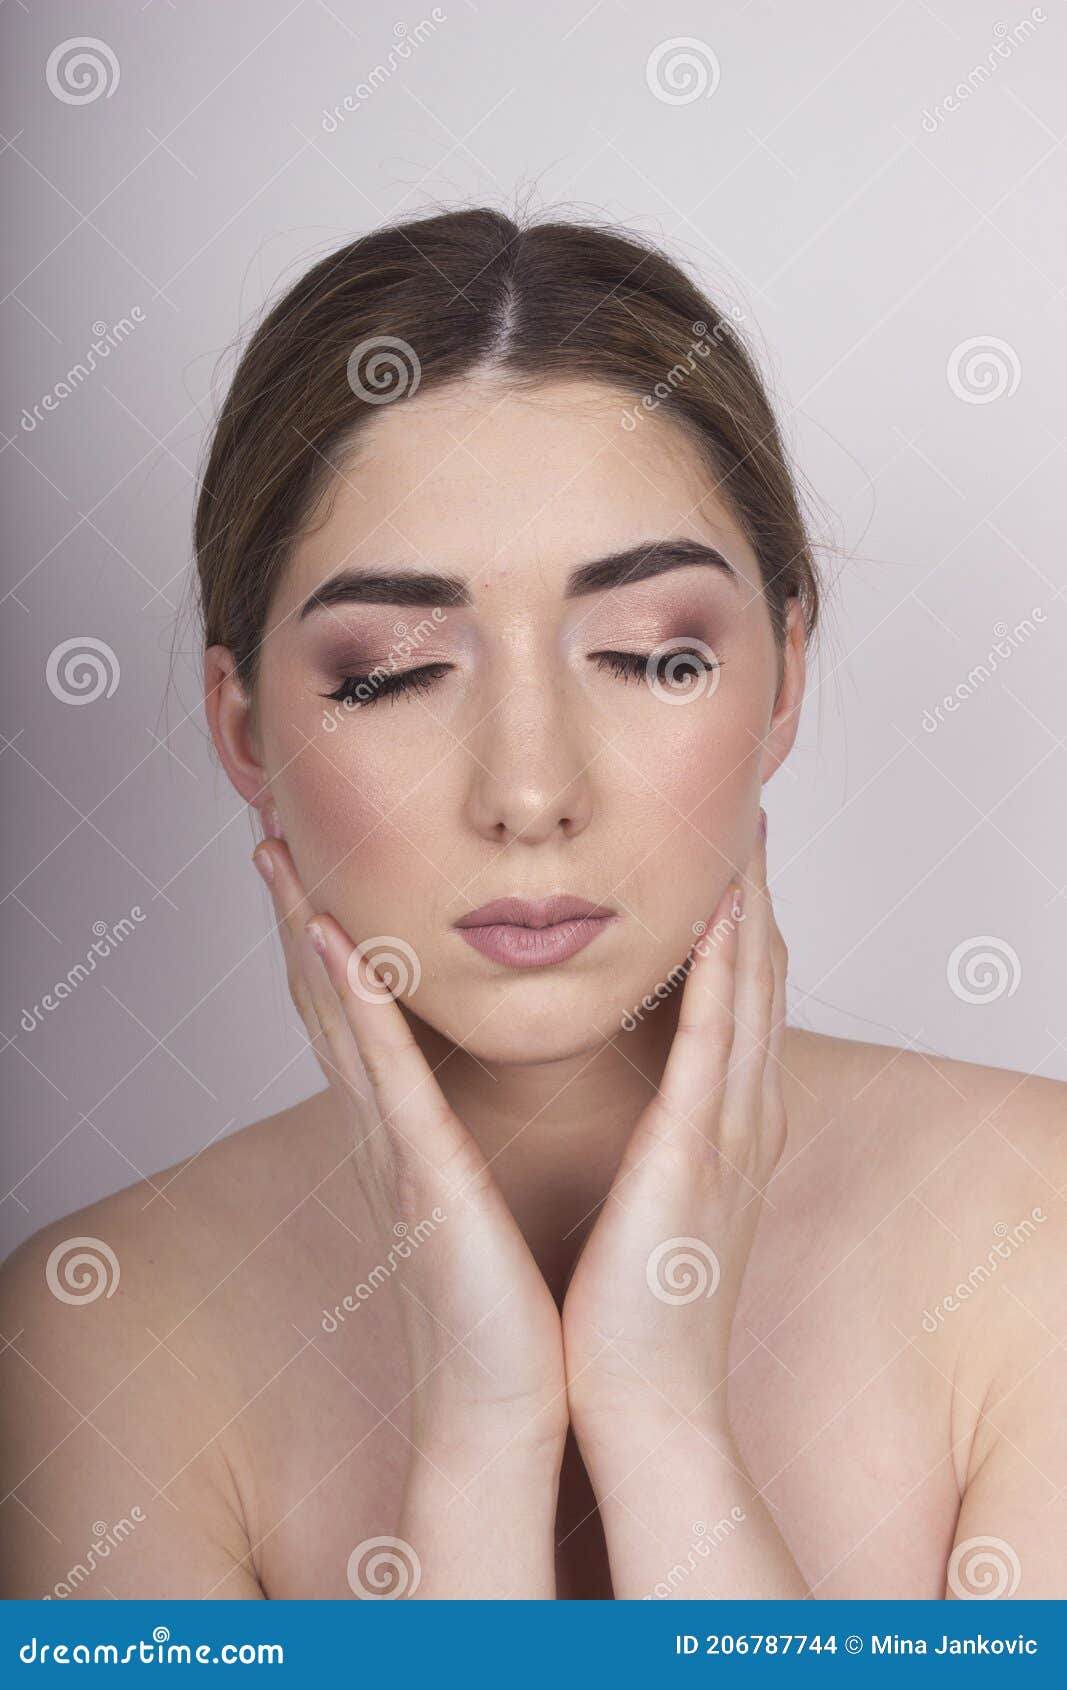 beauty makeup portrait